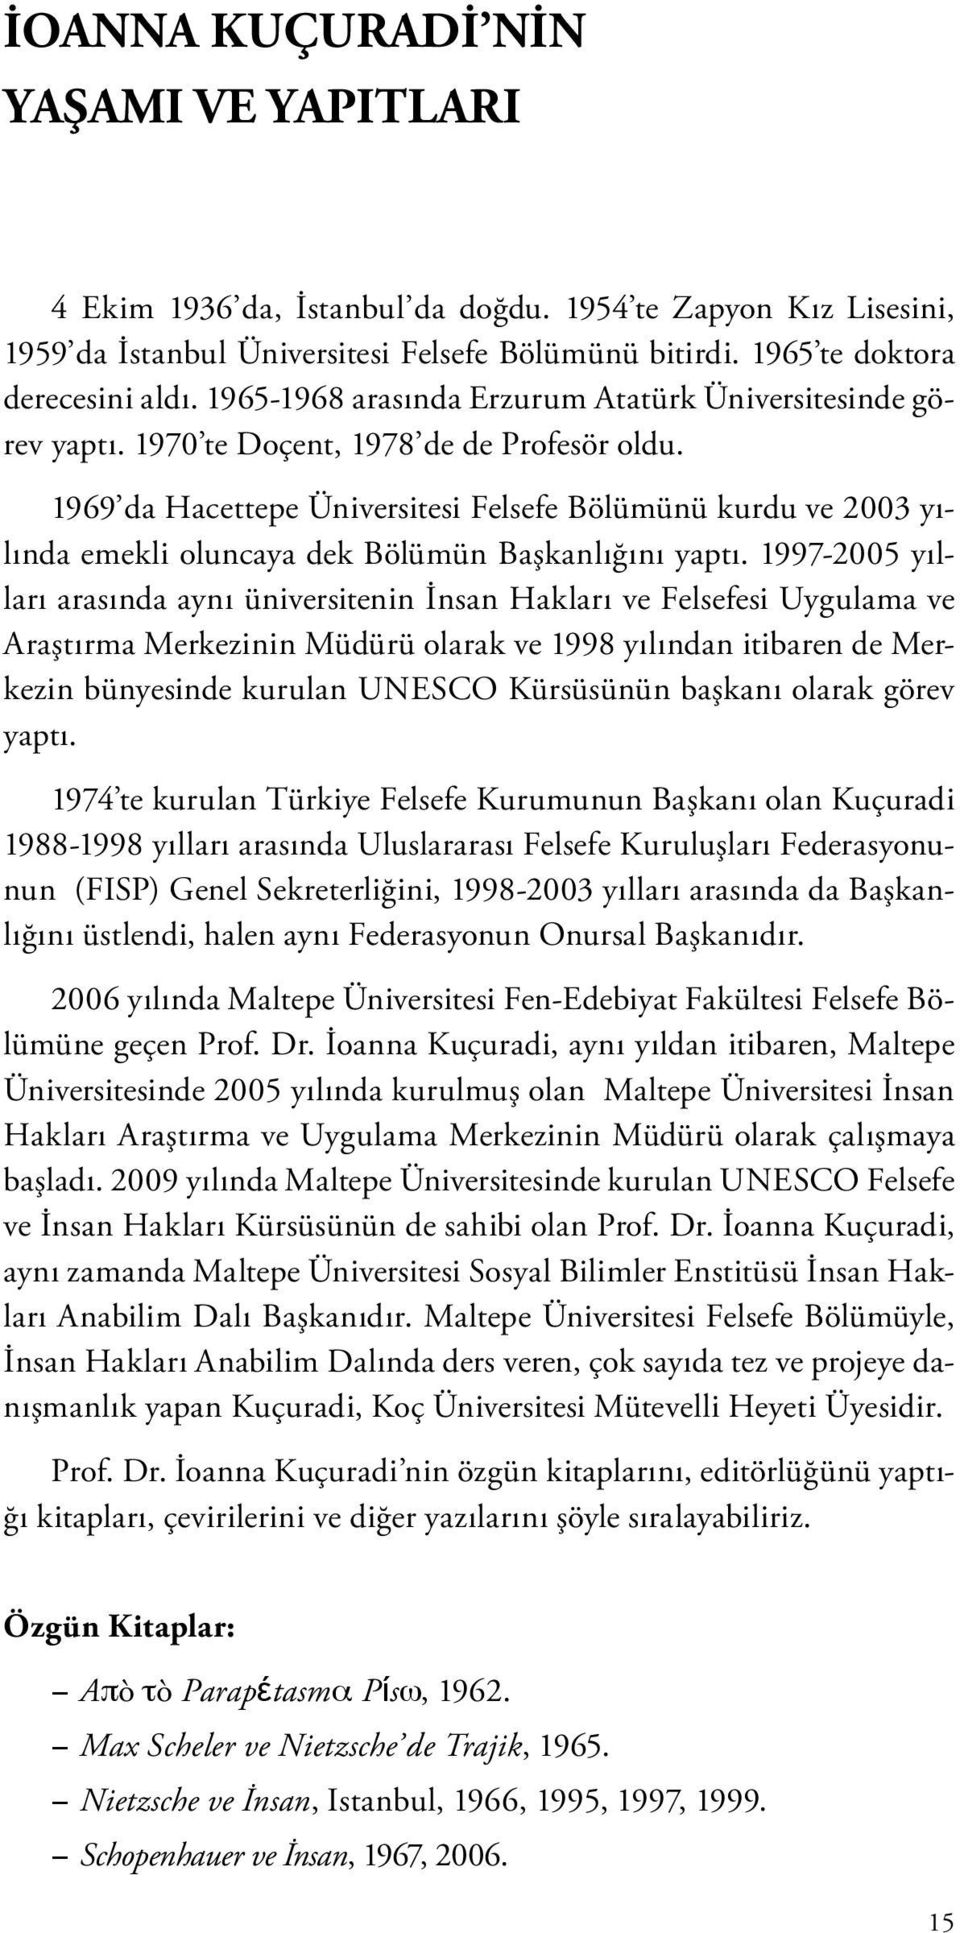 1969 da Hacettepe Üniversitesi Felsefe Bölümünü kurdu ve 2003 yılında emekli oluncaya dek Bölümün Başkanlığını yaptı.